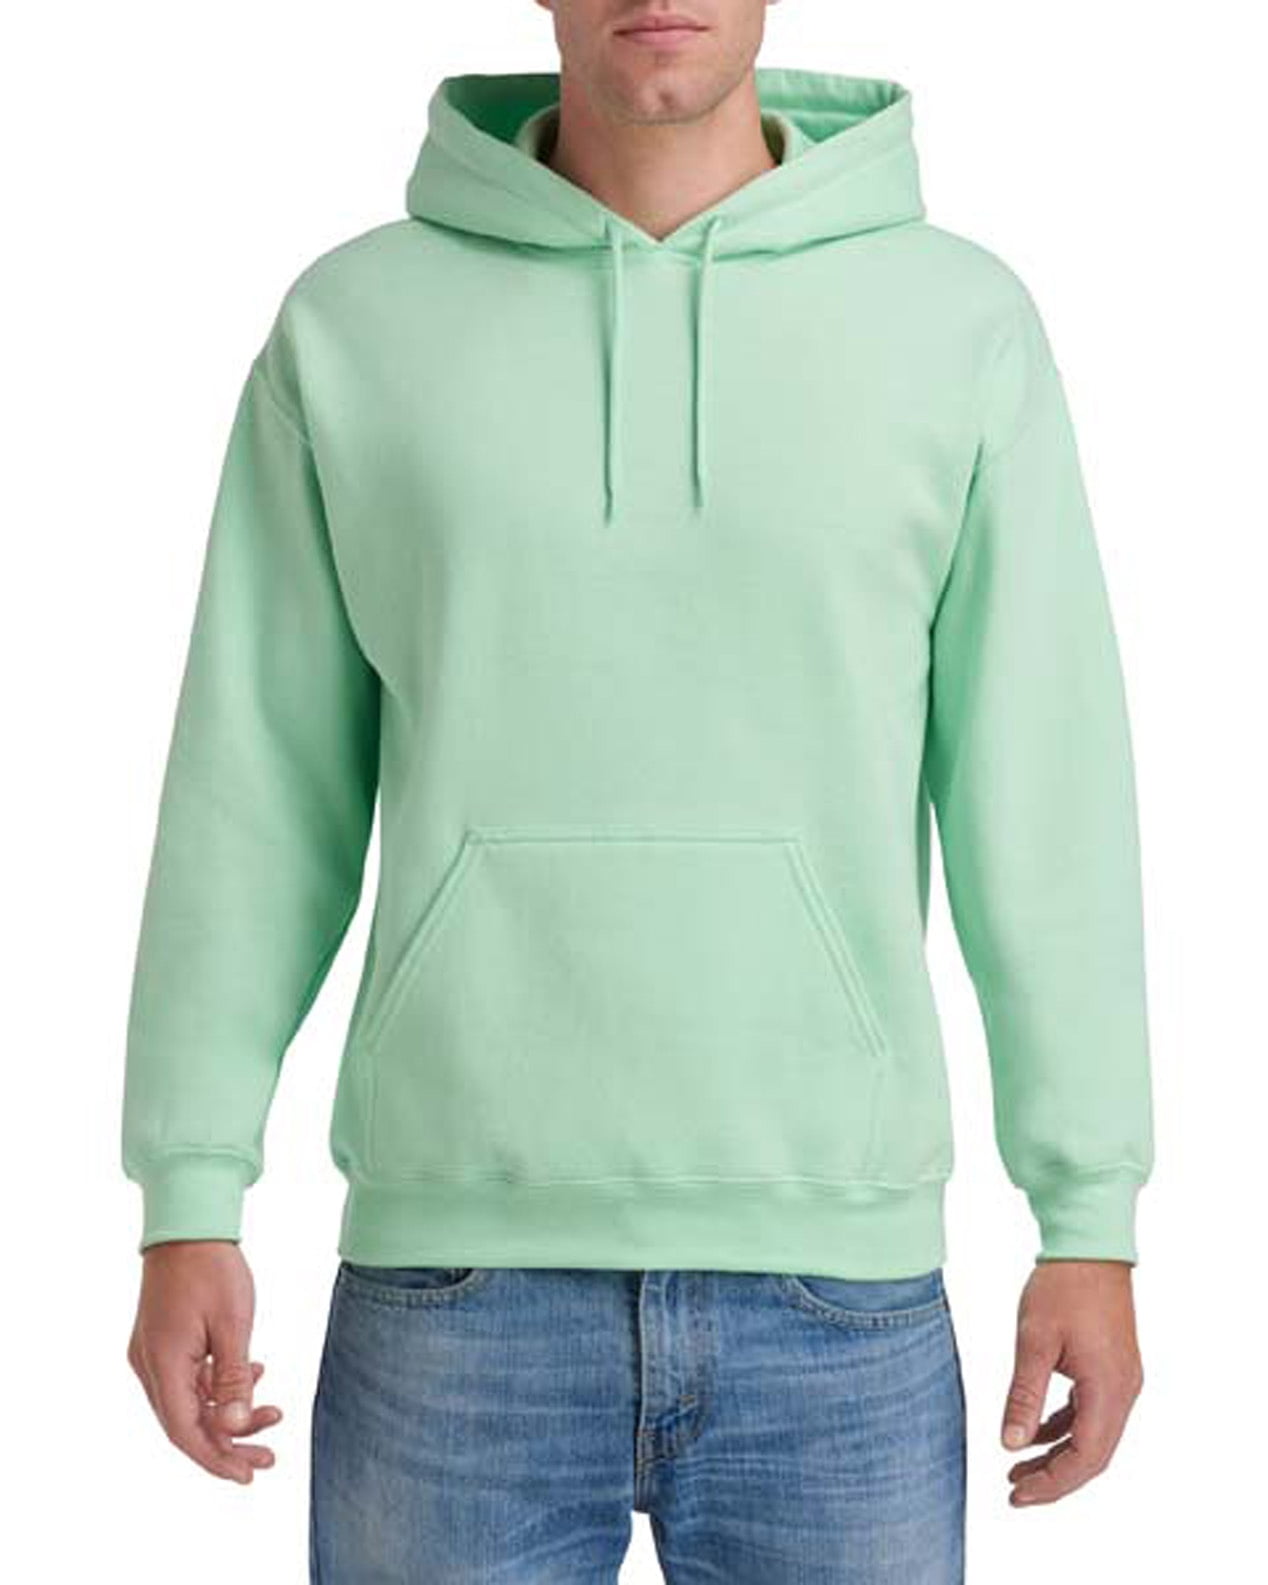 Voorwaardelijk escort De databank Gildan Mens Heavy Blend Hooded Sweatshirt, 2XL, Mint Green - Walmart.com